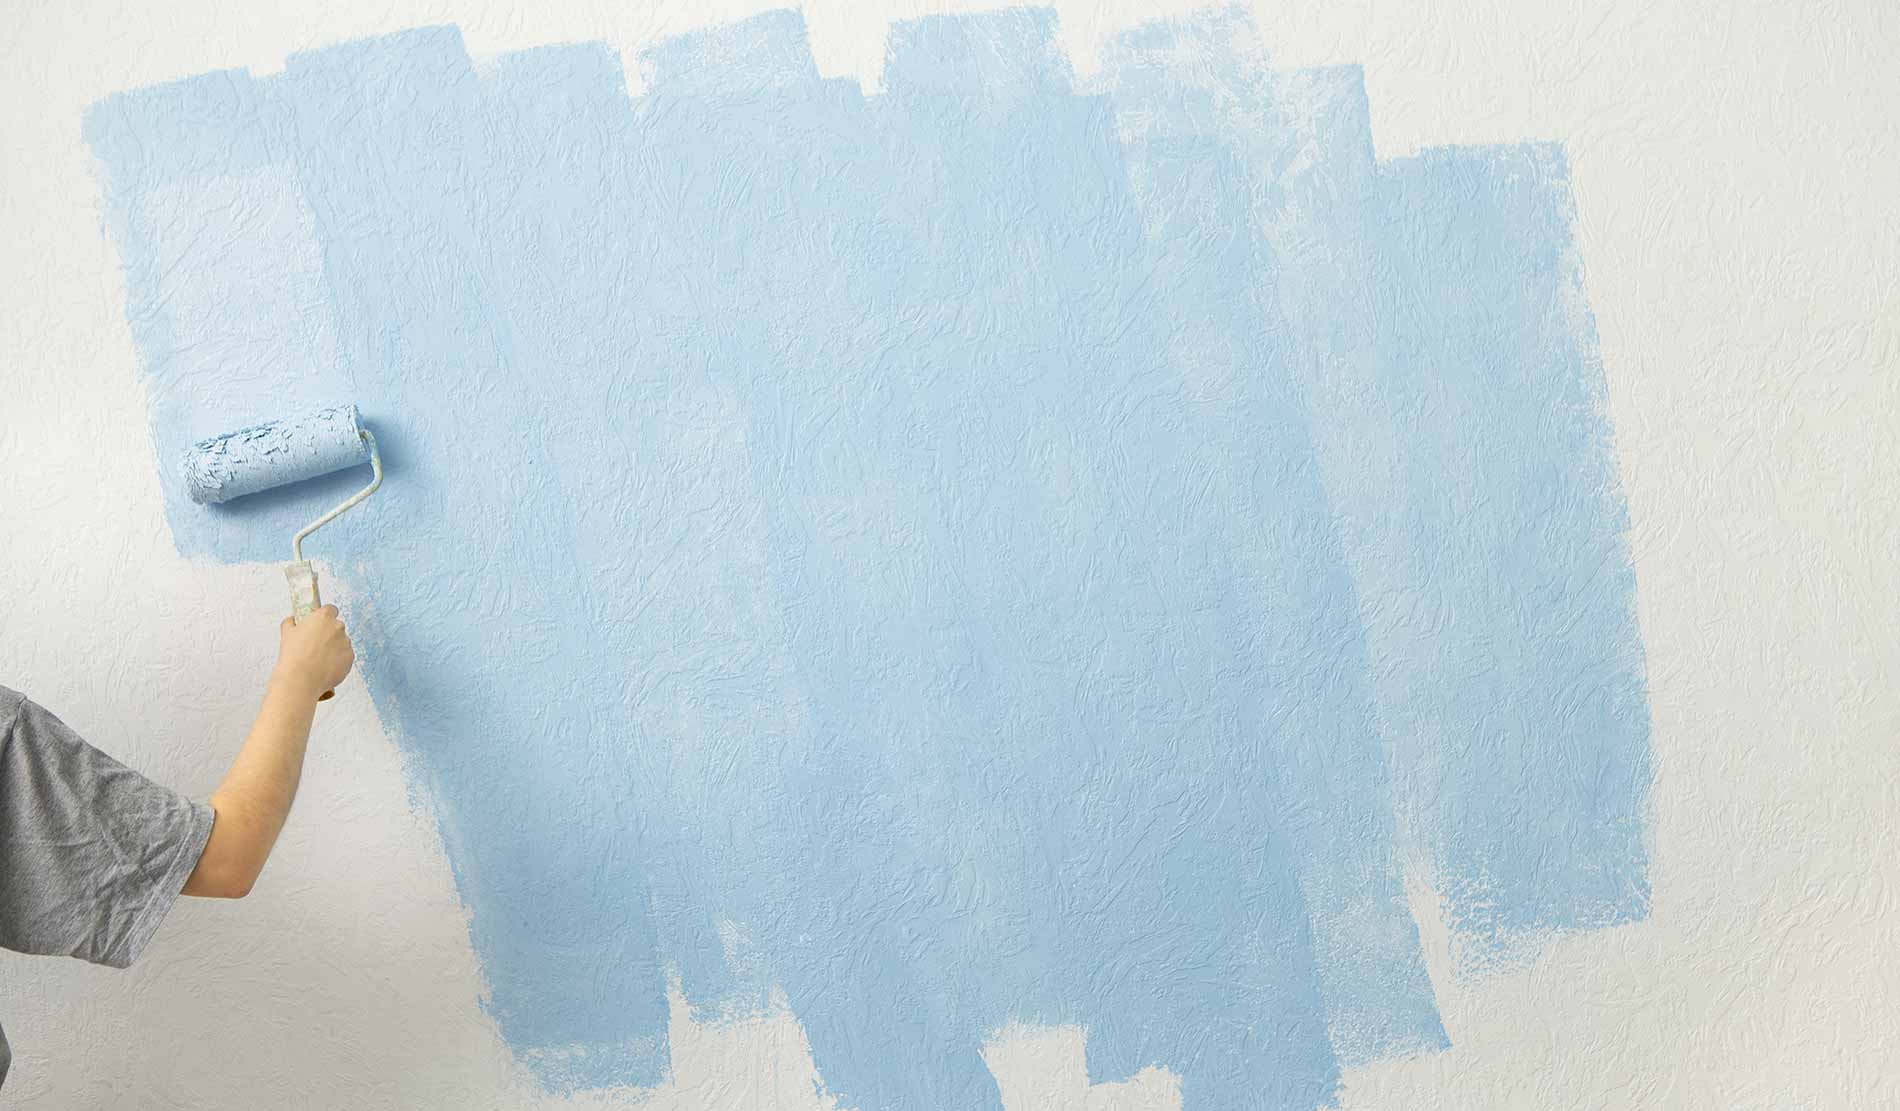 Behang verven: kun je schilderen behang? - Fotobehang